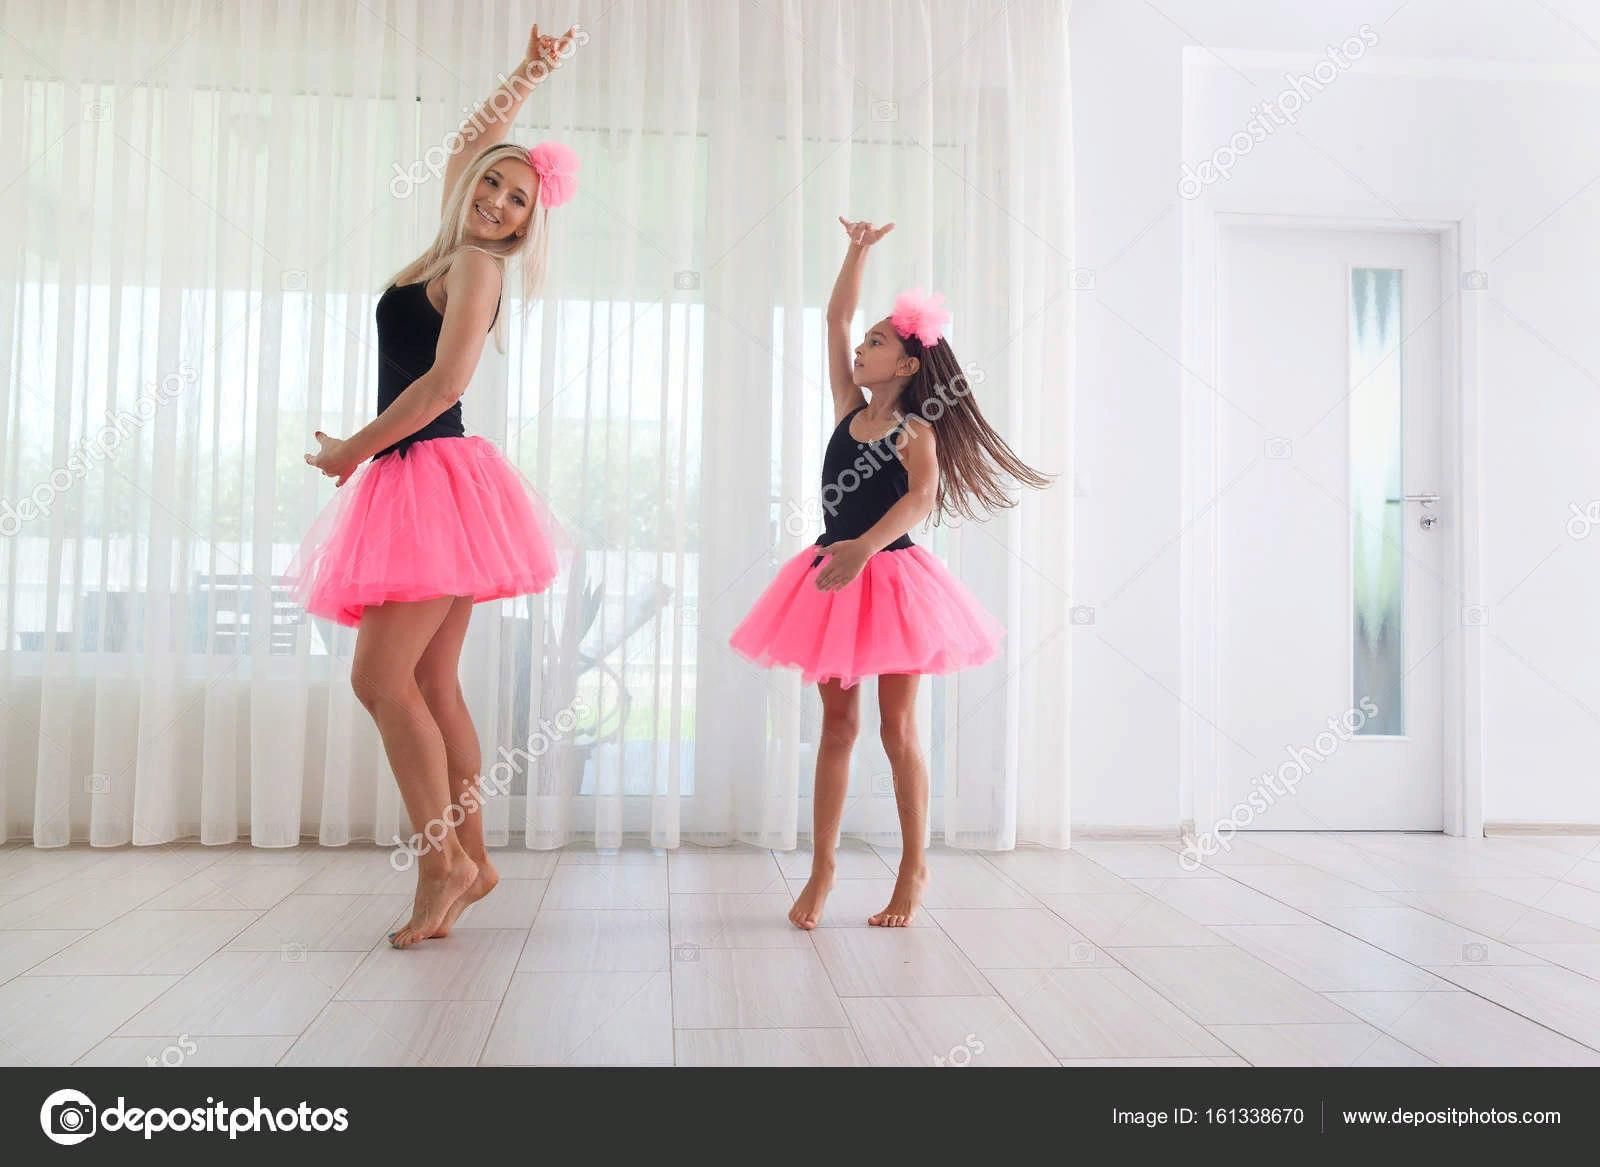 Танец мамы и дочери. Танец мамы с дочкой. Мама с дочкой танцуют. Фотосессия мама дочь в танцах. Мама с дочкой танцуют вместе.